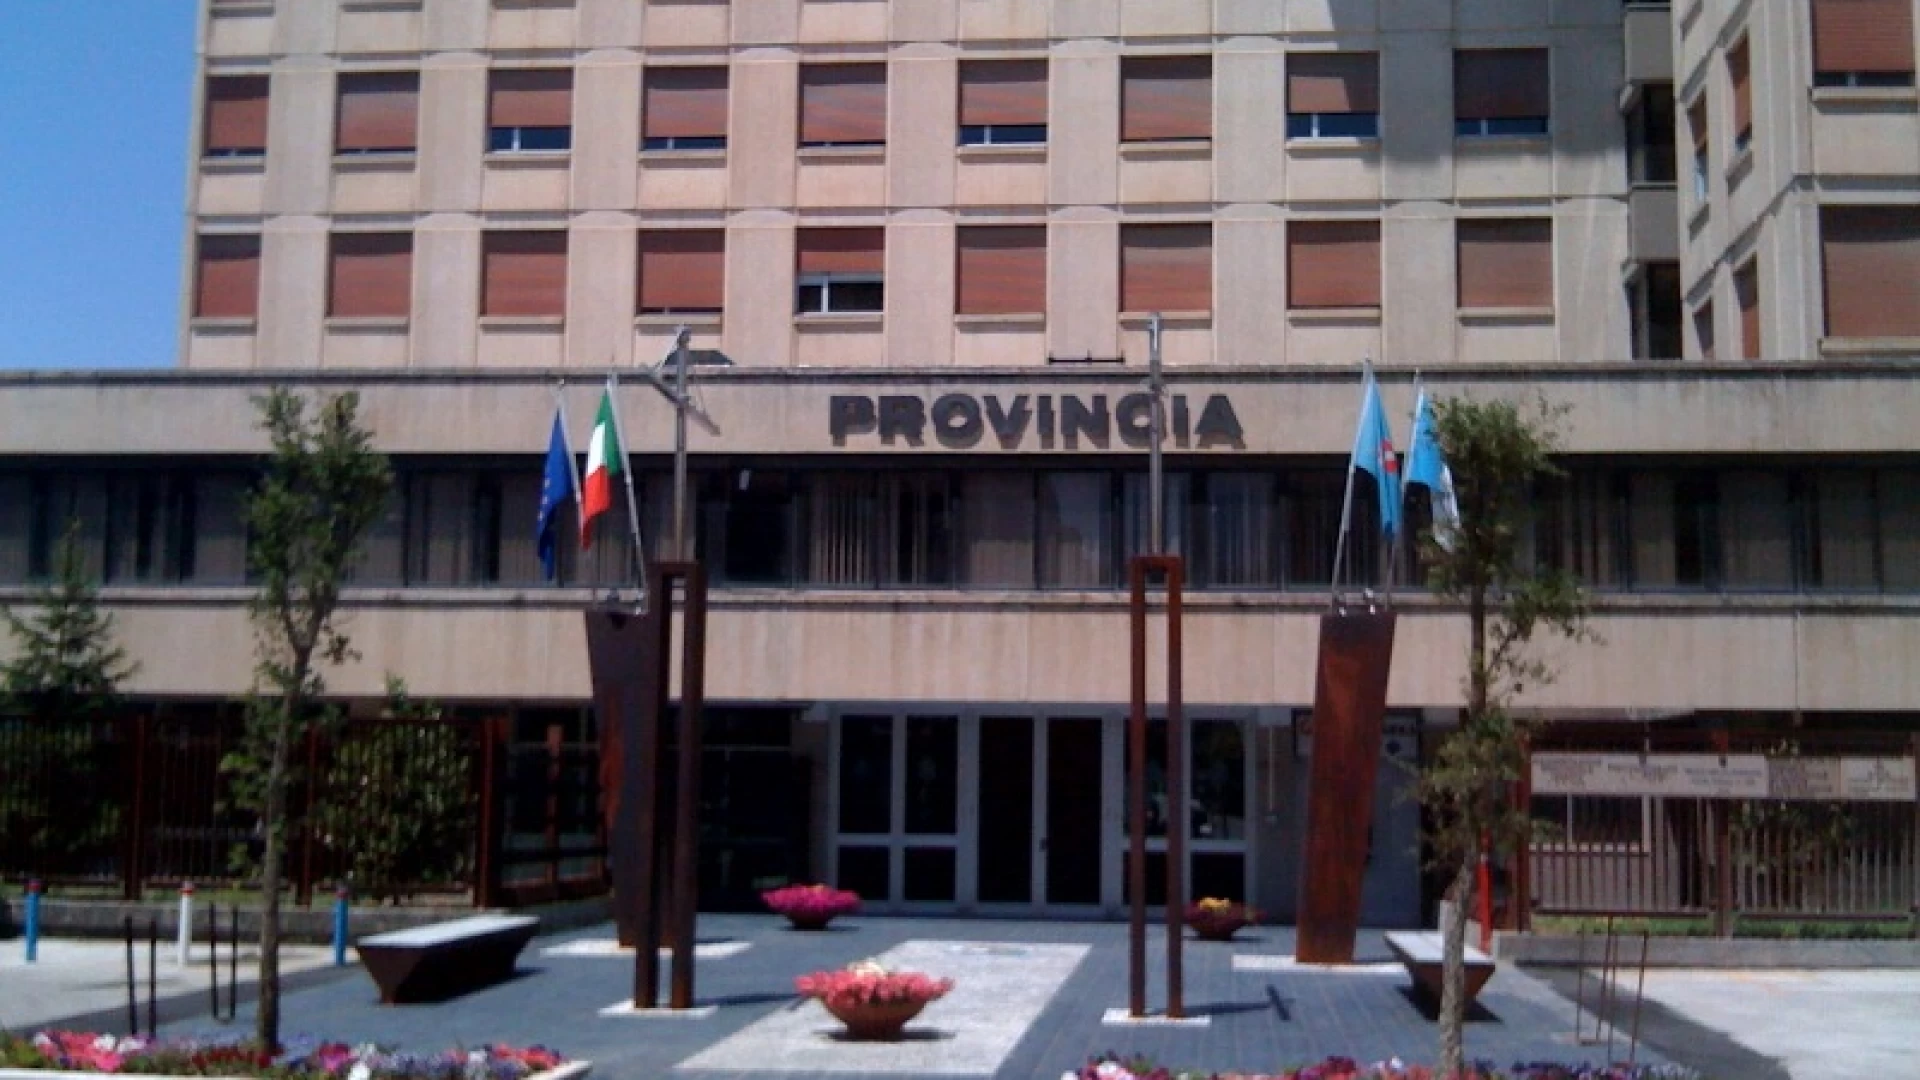 Isernia: il Consiglio Provinciale in riunione per la trattazione del bilancio di previsione 2017-2019. Coia convoca anche l’assemblea dei sindaci per la valutazione del documento economico.